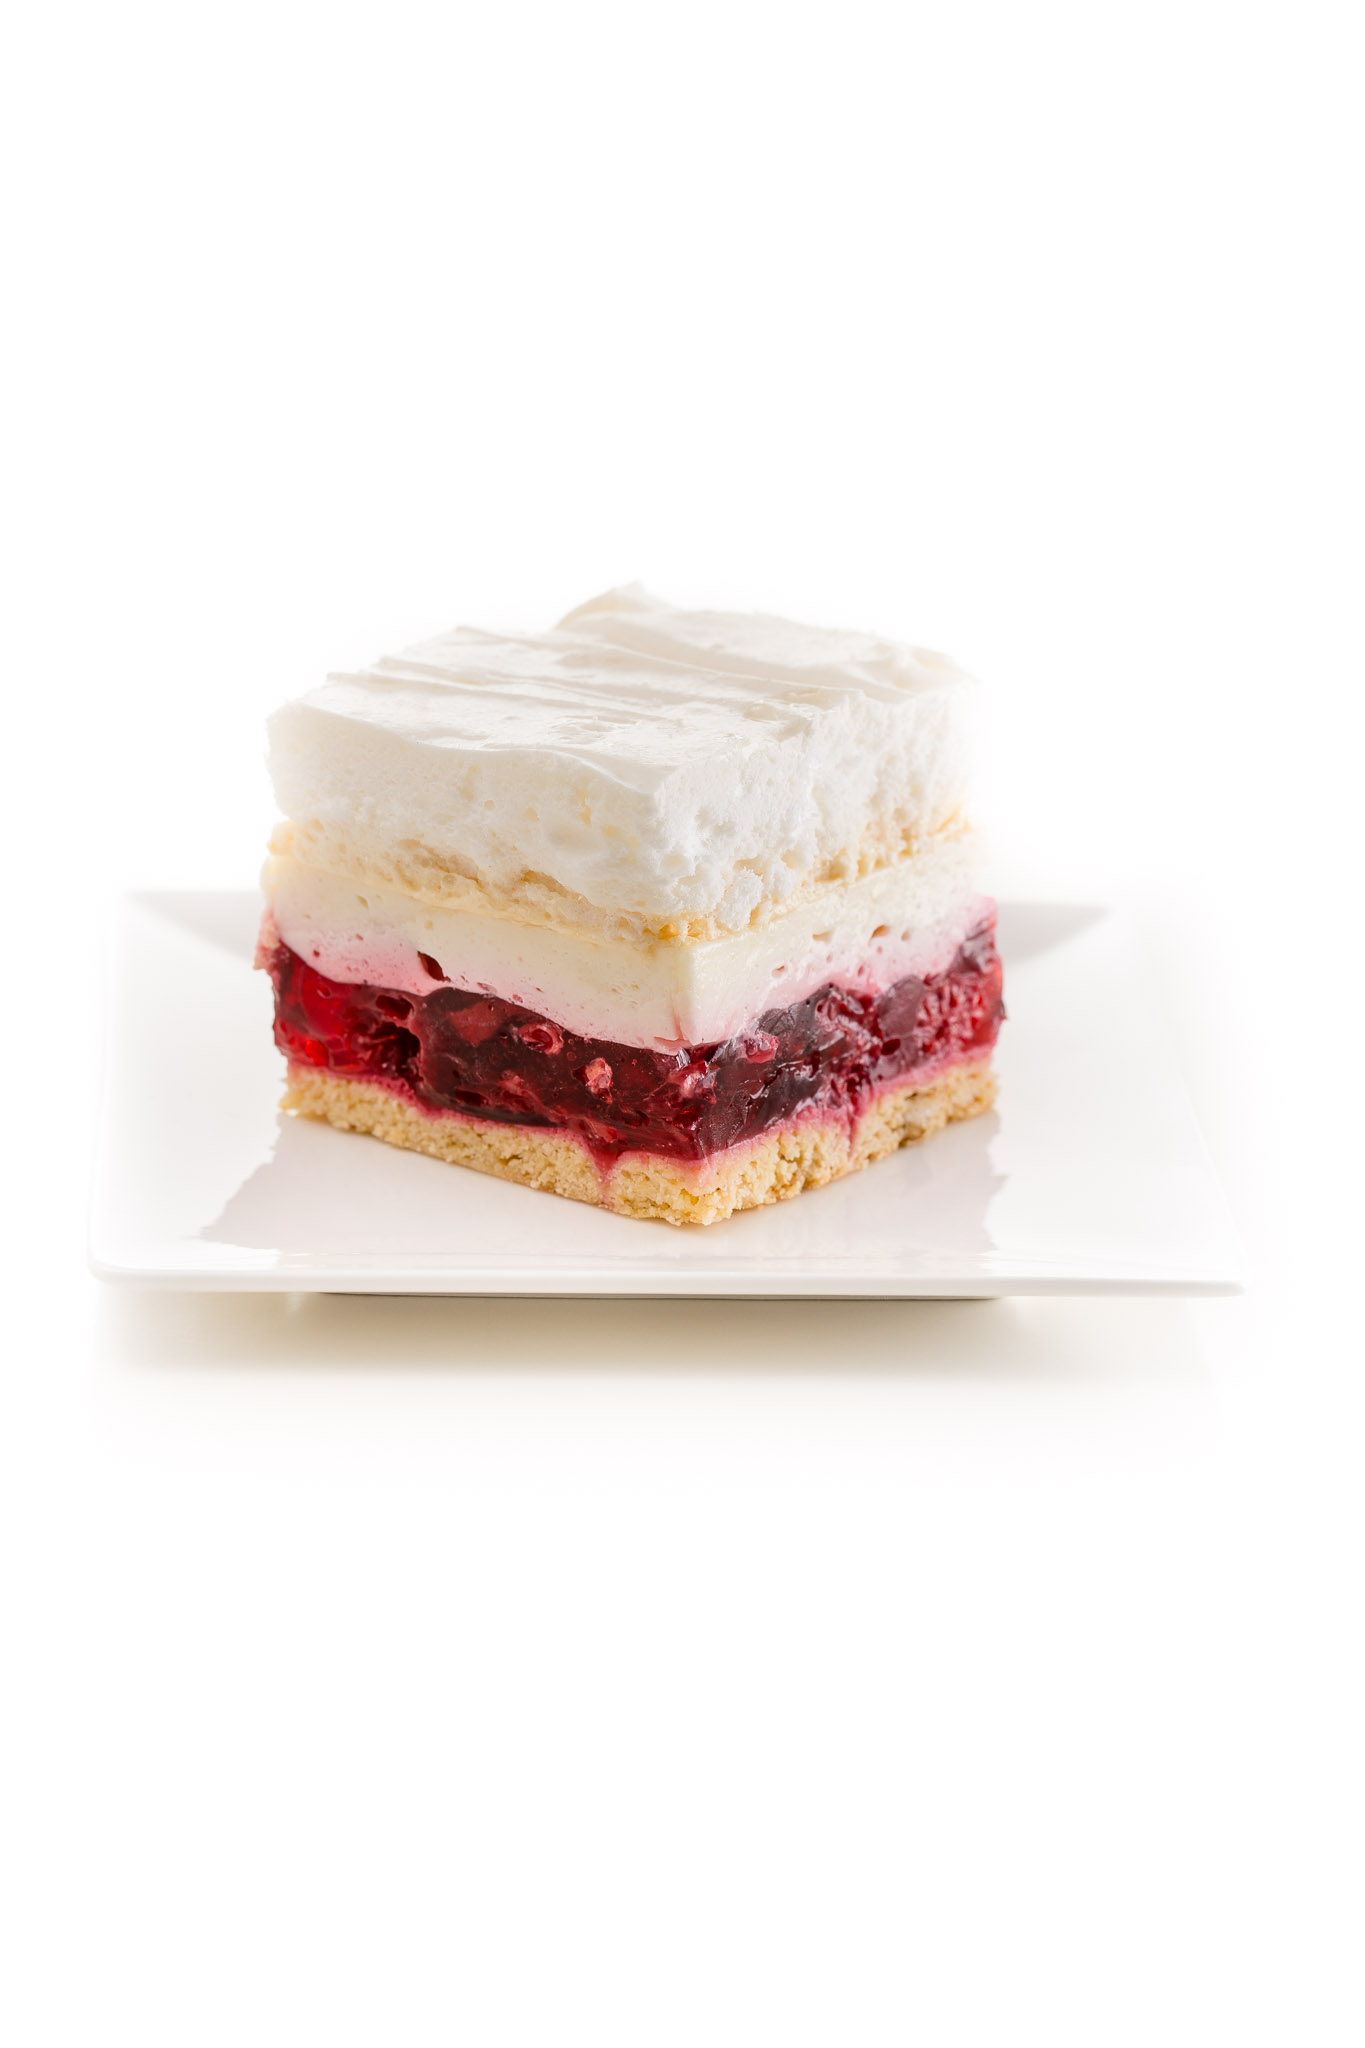 Zdjęcia ciast na białym tle - malinowa chmurka, sesja dla cukierni